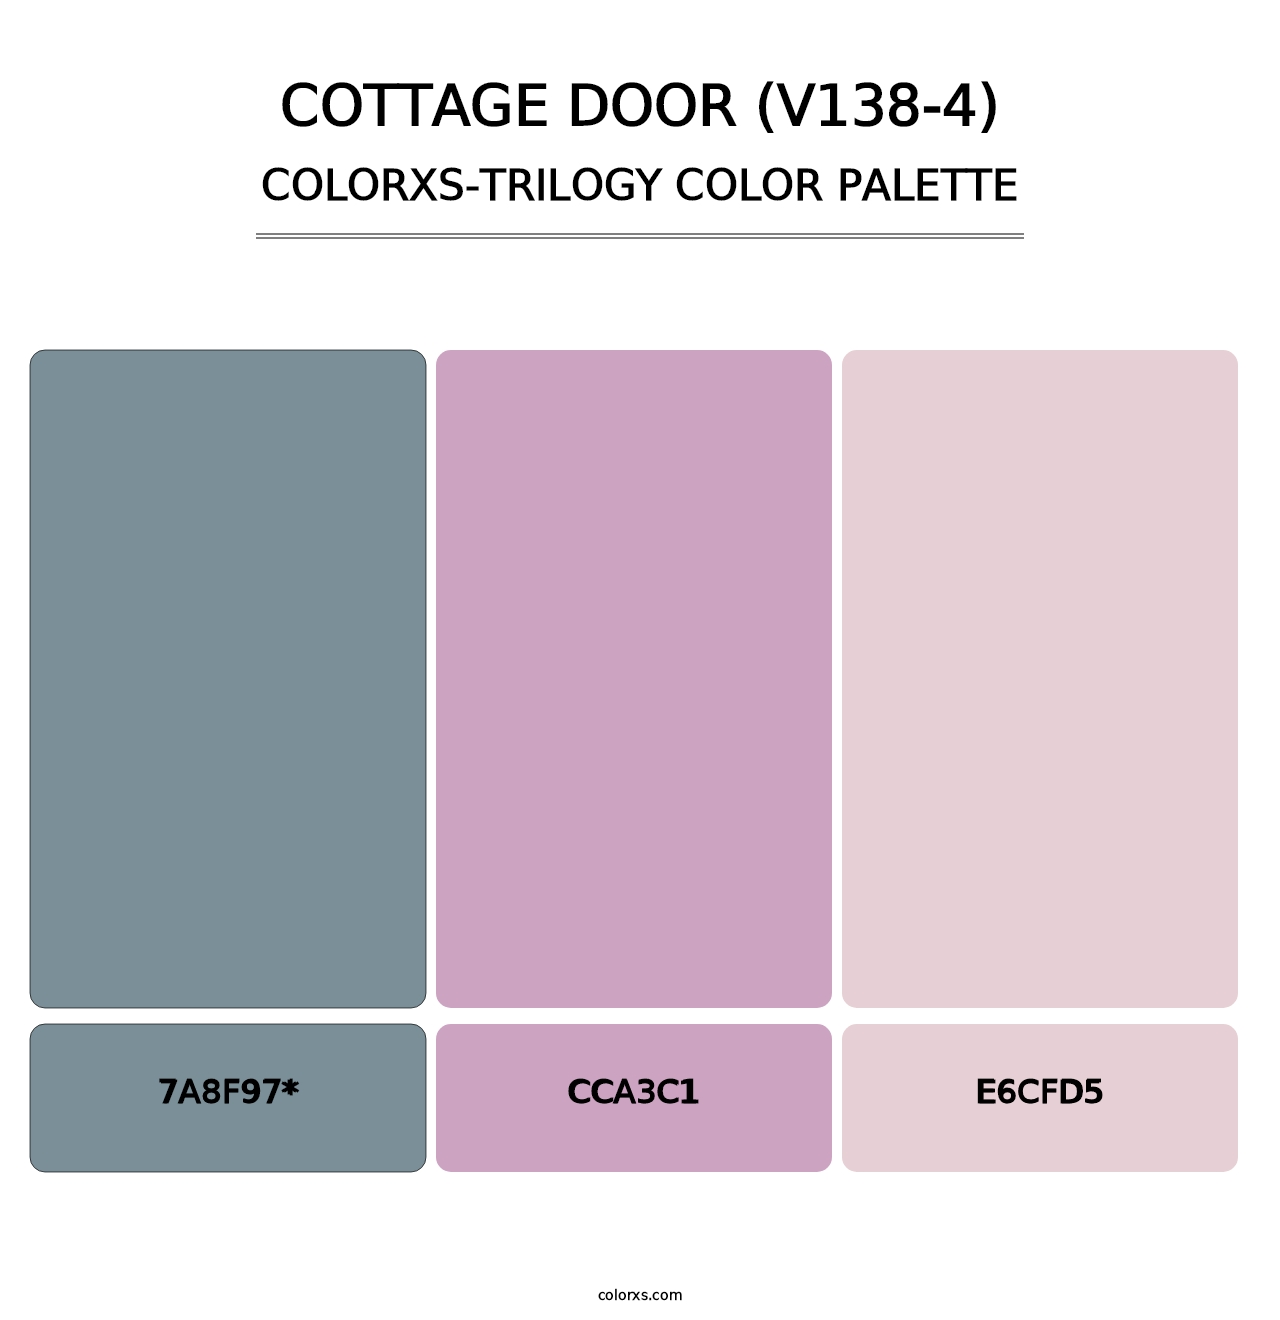 Cottage Door (V138-4) - Colorxs Trilogy Palette